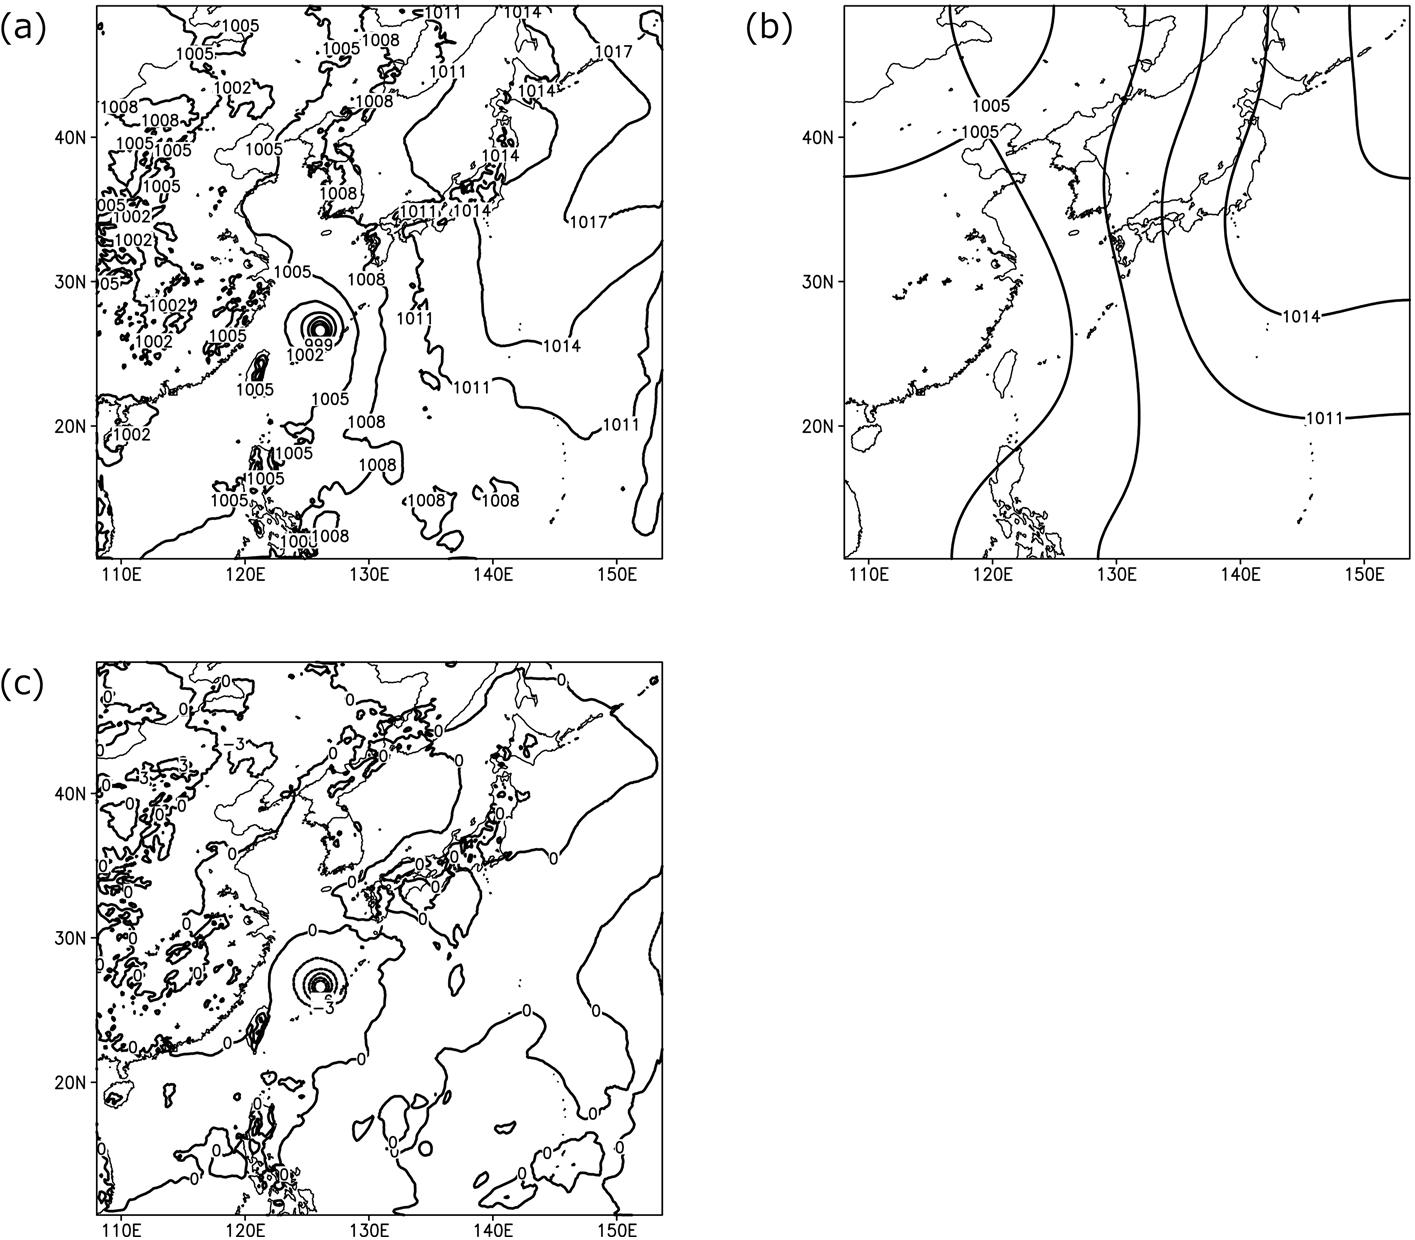 2010년 제4호 태풍 DIANMU에 FFEM필터링을 적용하여 종관규모와 태풍규모의 요란을 분리한 결과. (a) 전체의 해면기압장. (b) 종관규모(배경장). (c) 태풍규모의 요란장. 단위는 hPa임.